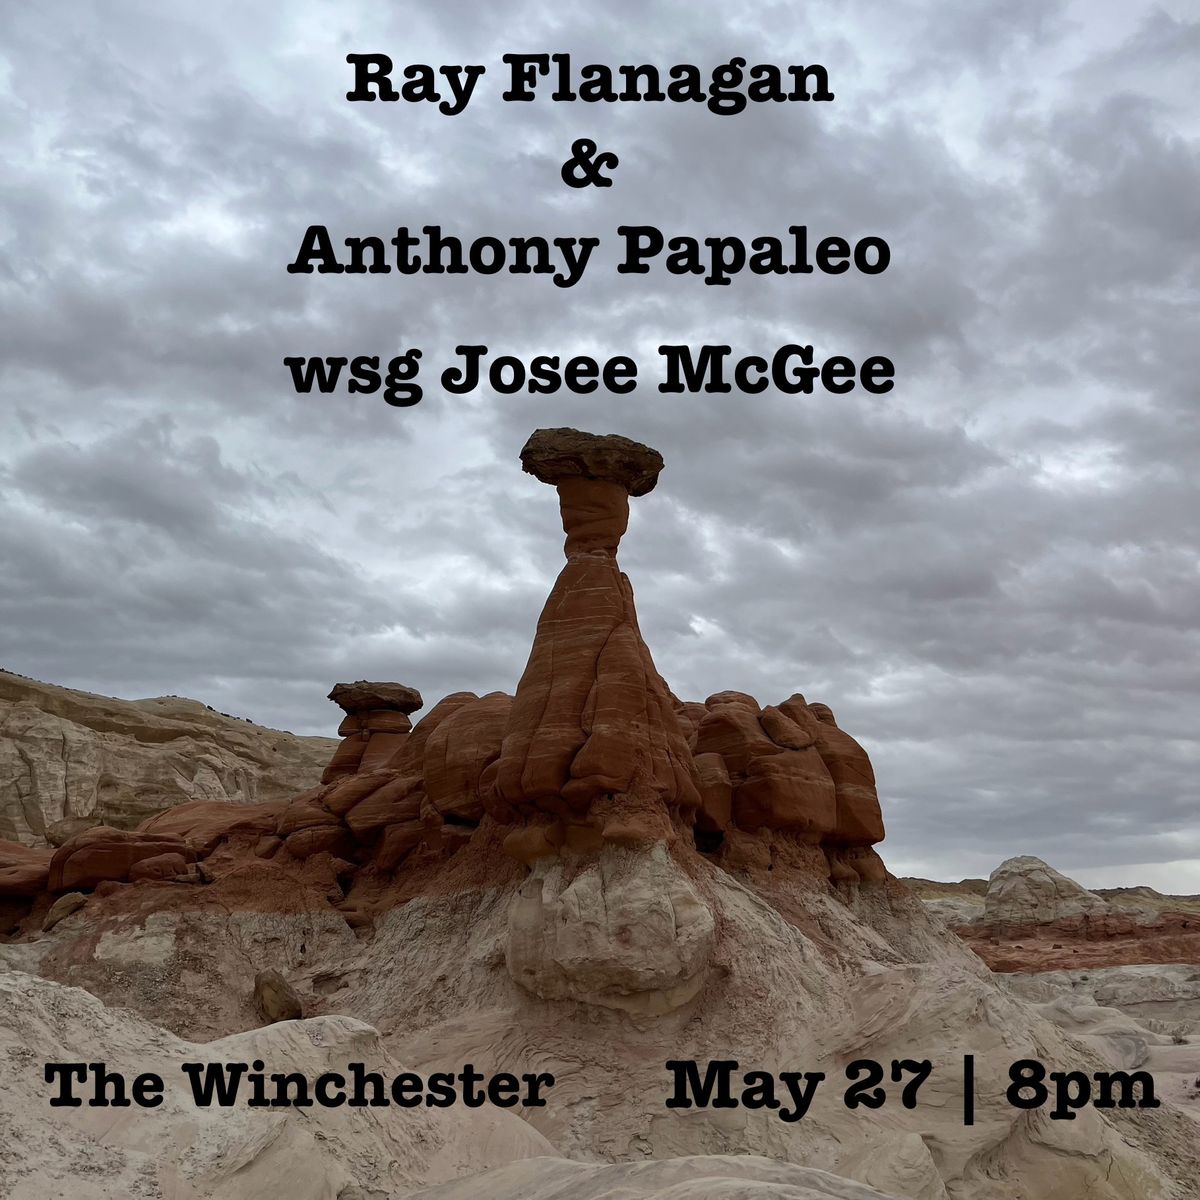 Ray Flanagan & Anthony Papaleo wsg Josee McGee